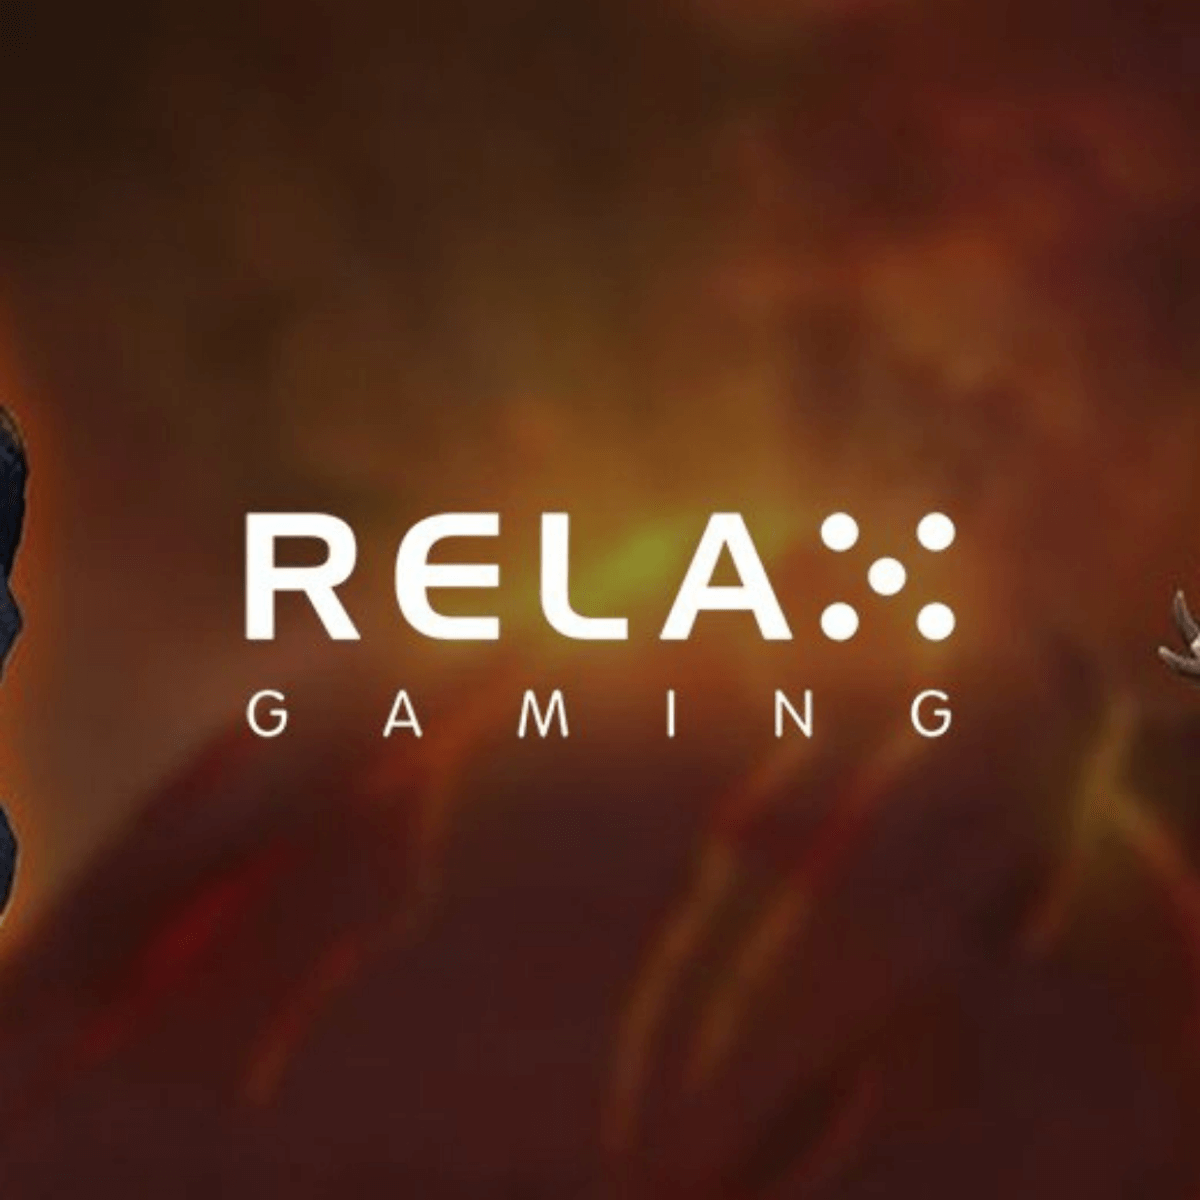 relax gaming logo